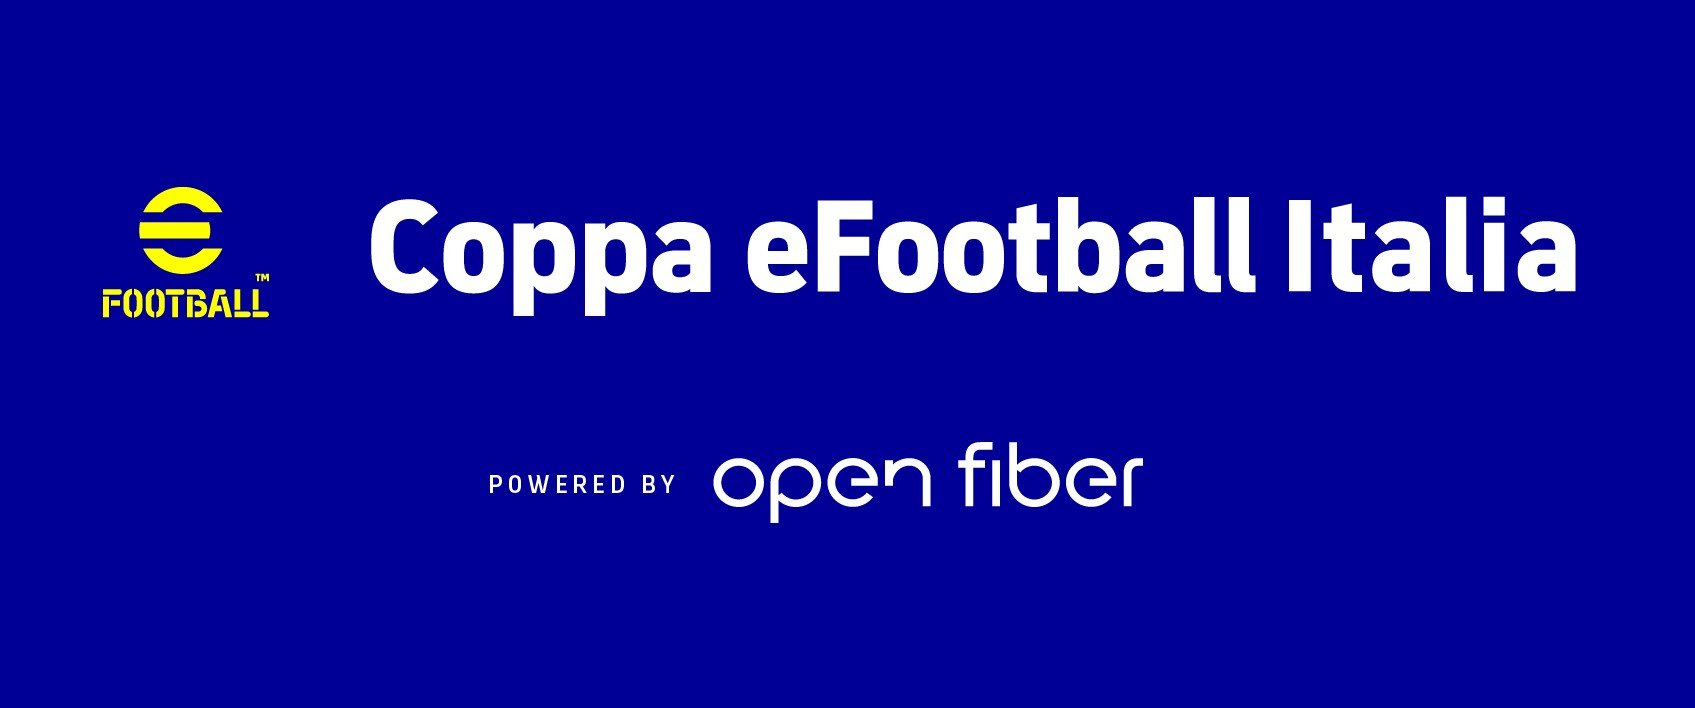 Open Fiber è sponsor della Coppa eFootball Italia